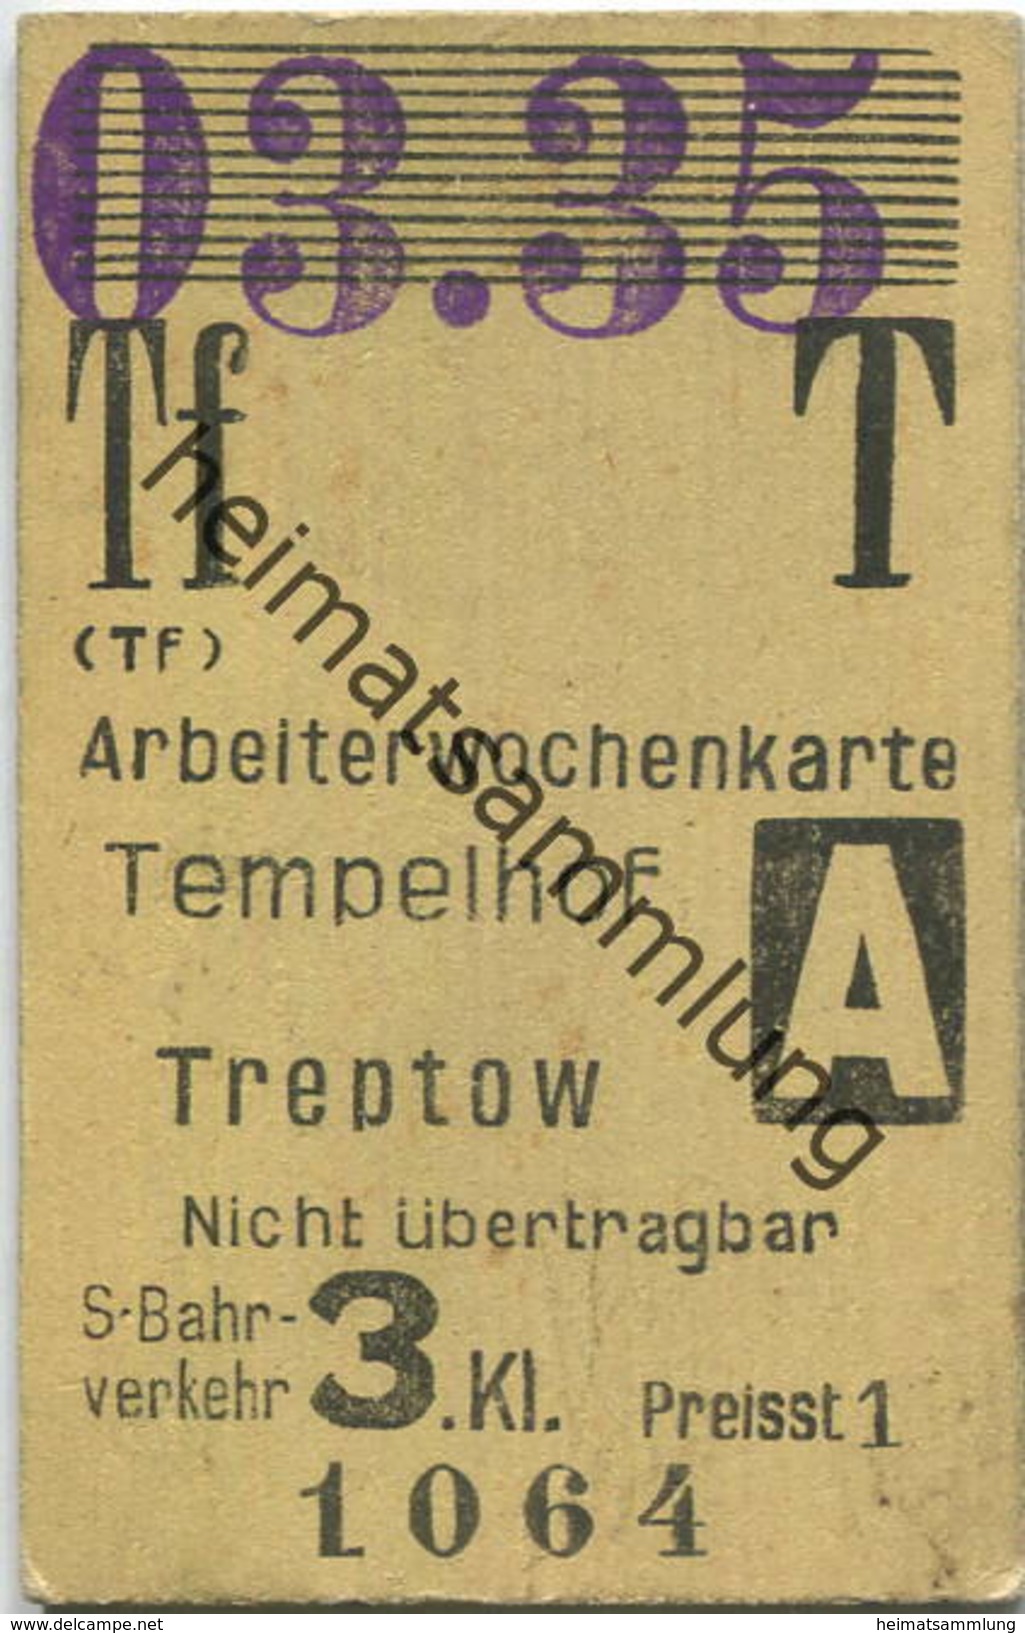 Deutschland - Berlin - Arbeiterwochenkarte - Tempelhof Treptow - S-Bahnverkehr 3. Kl. - 03. 1935 - Europa